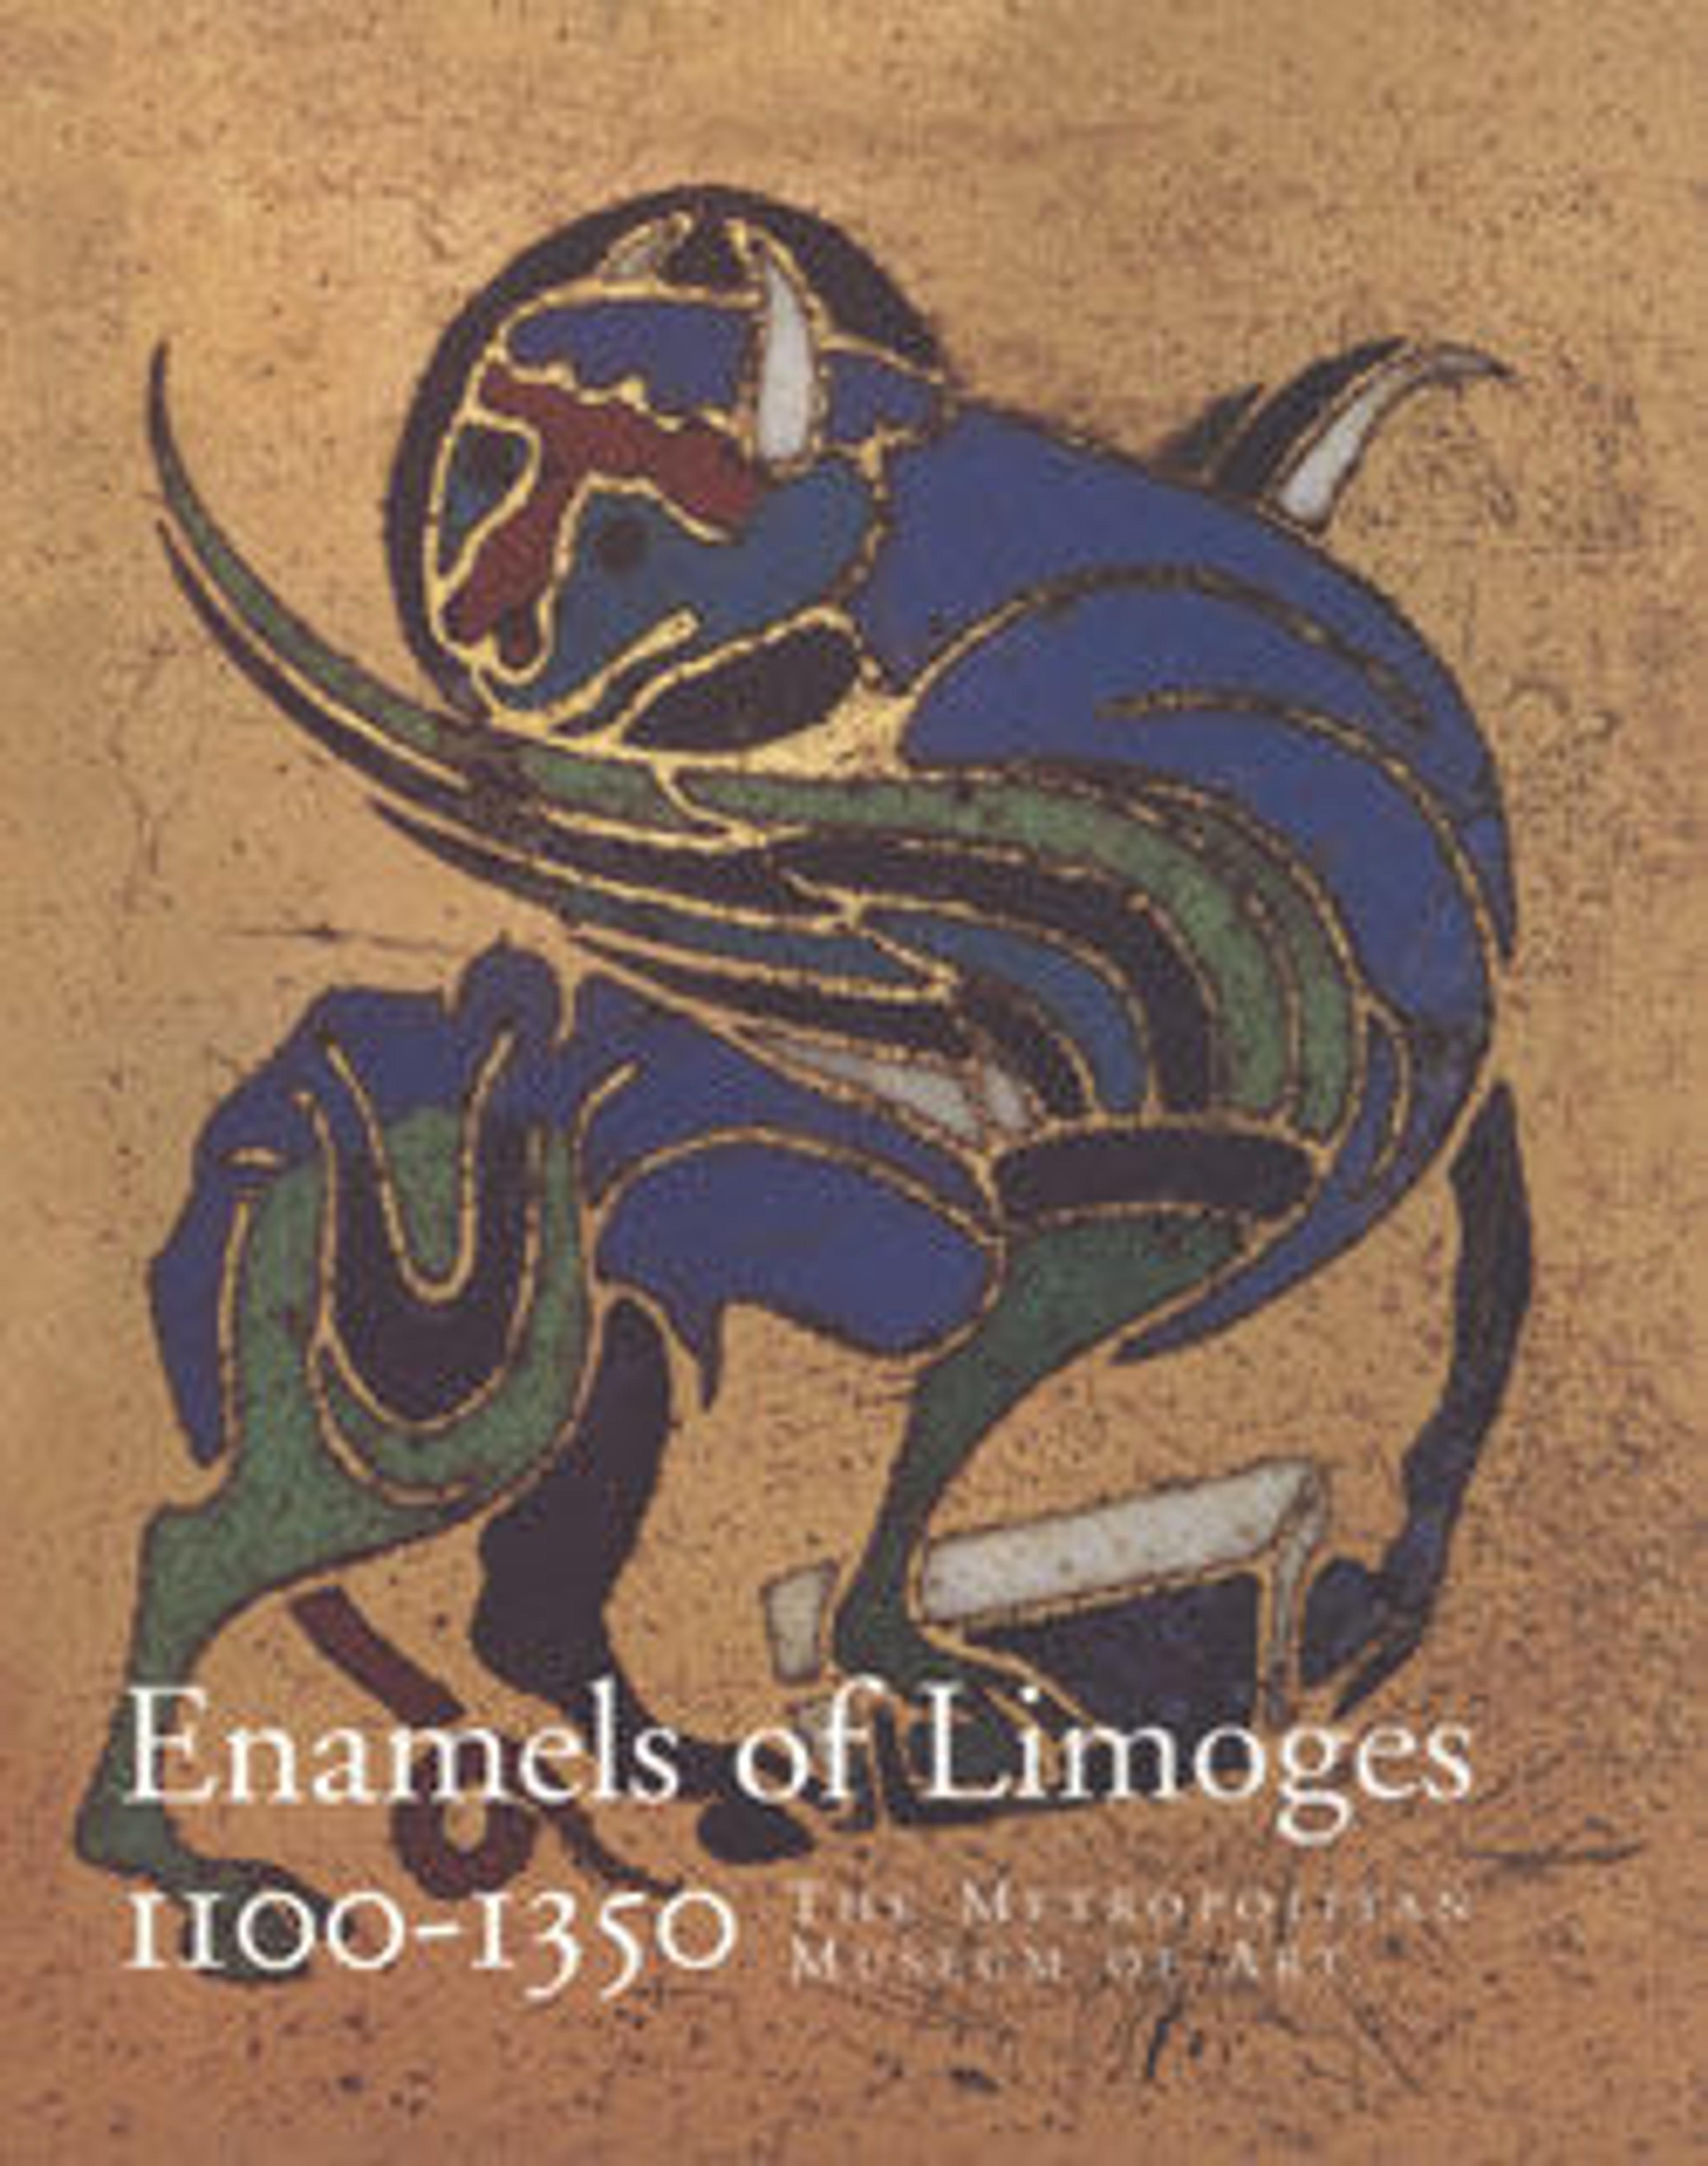 Enamels of Limoges, 1100-1350